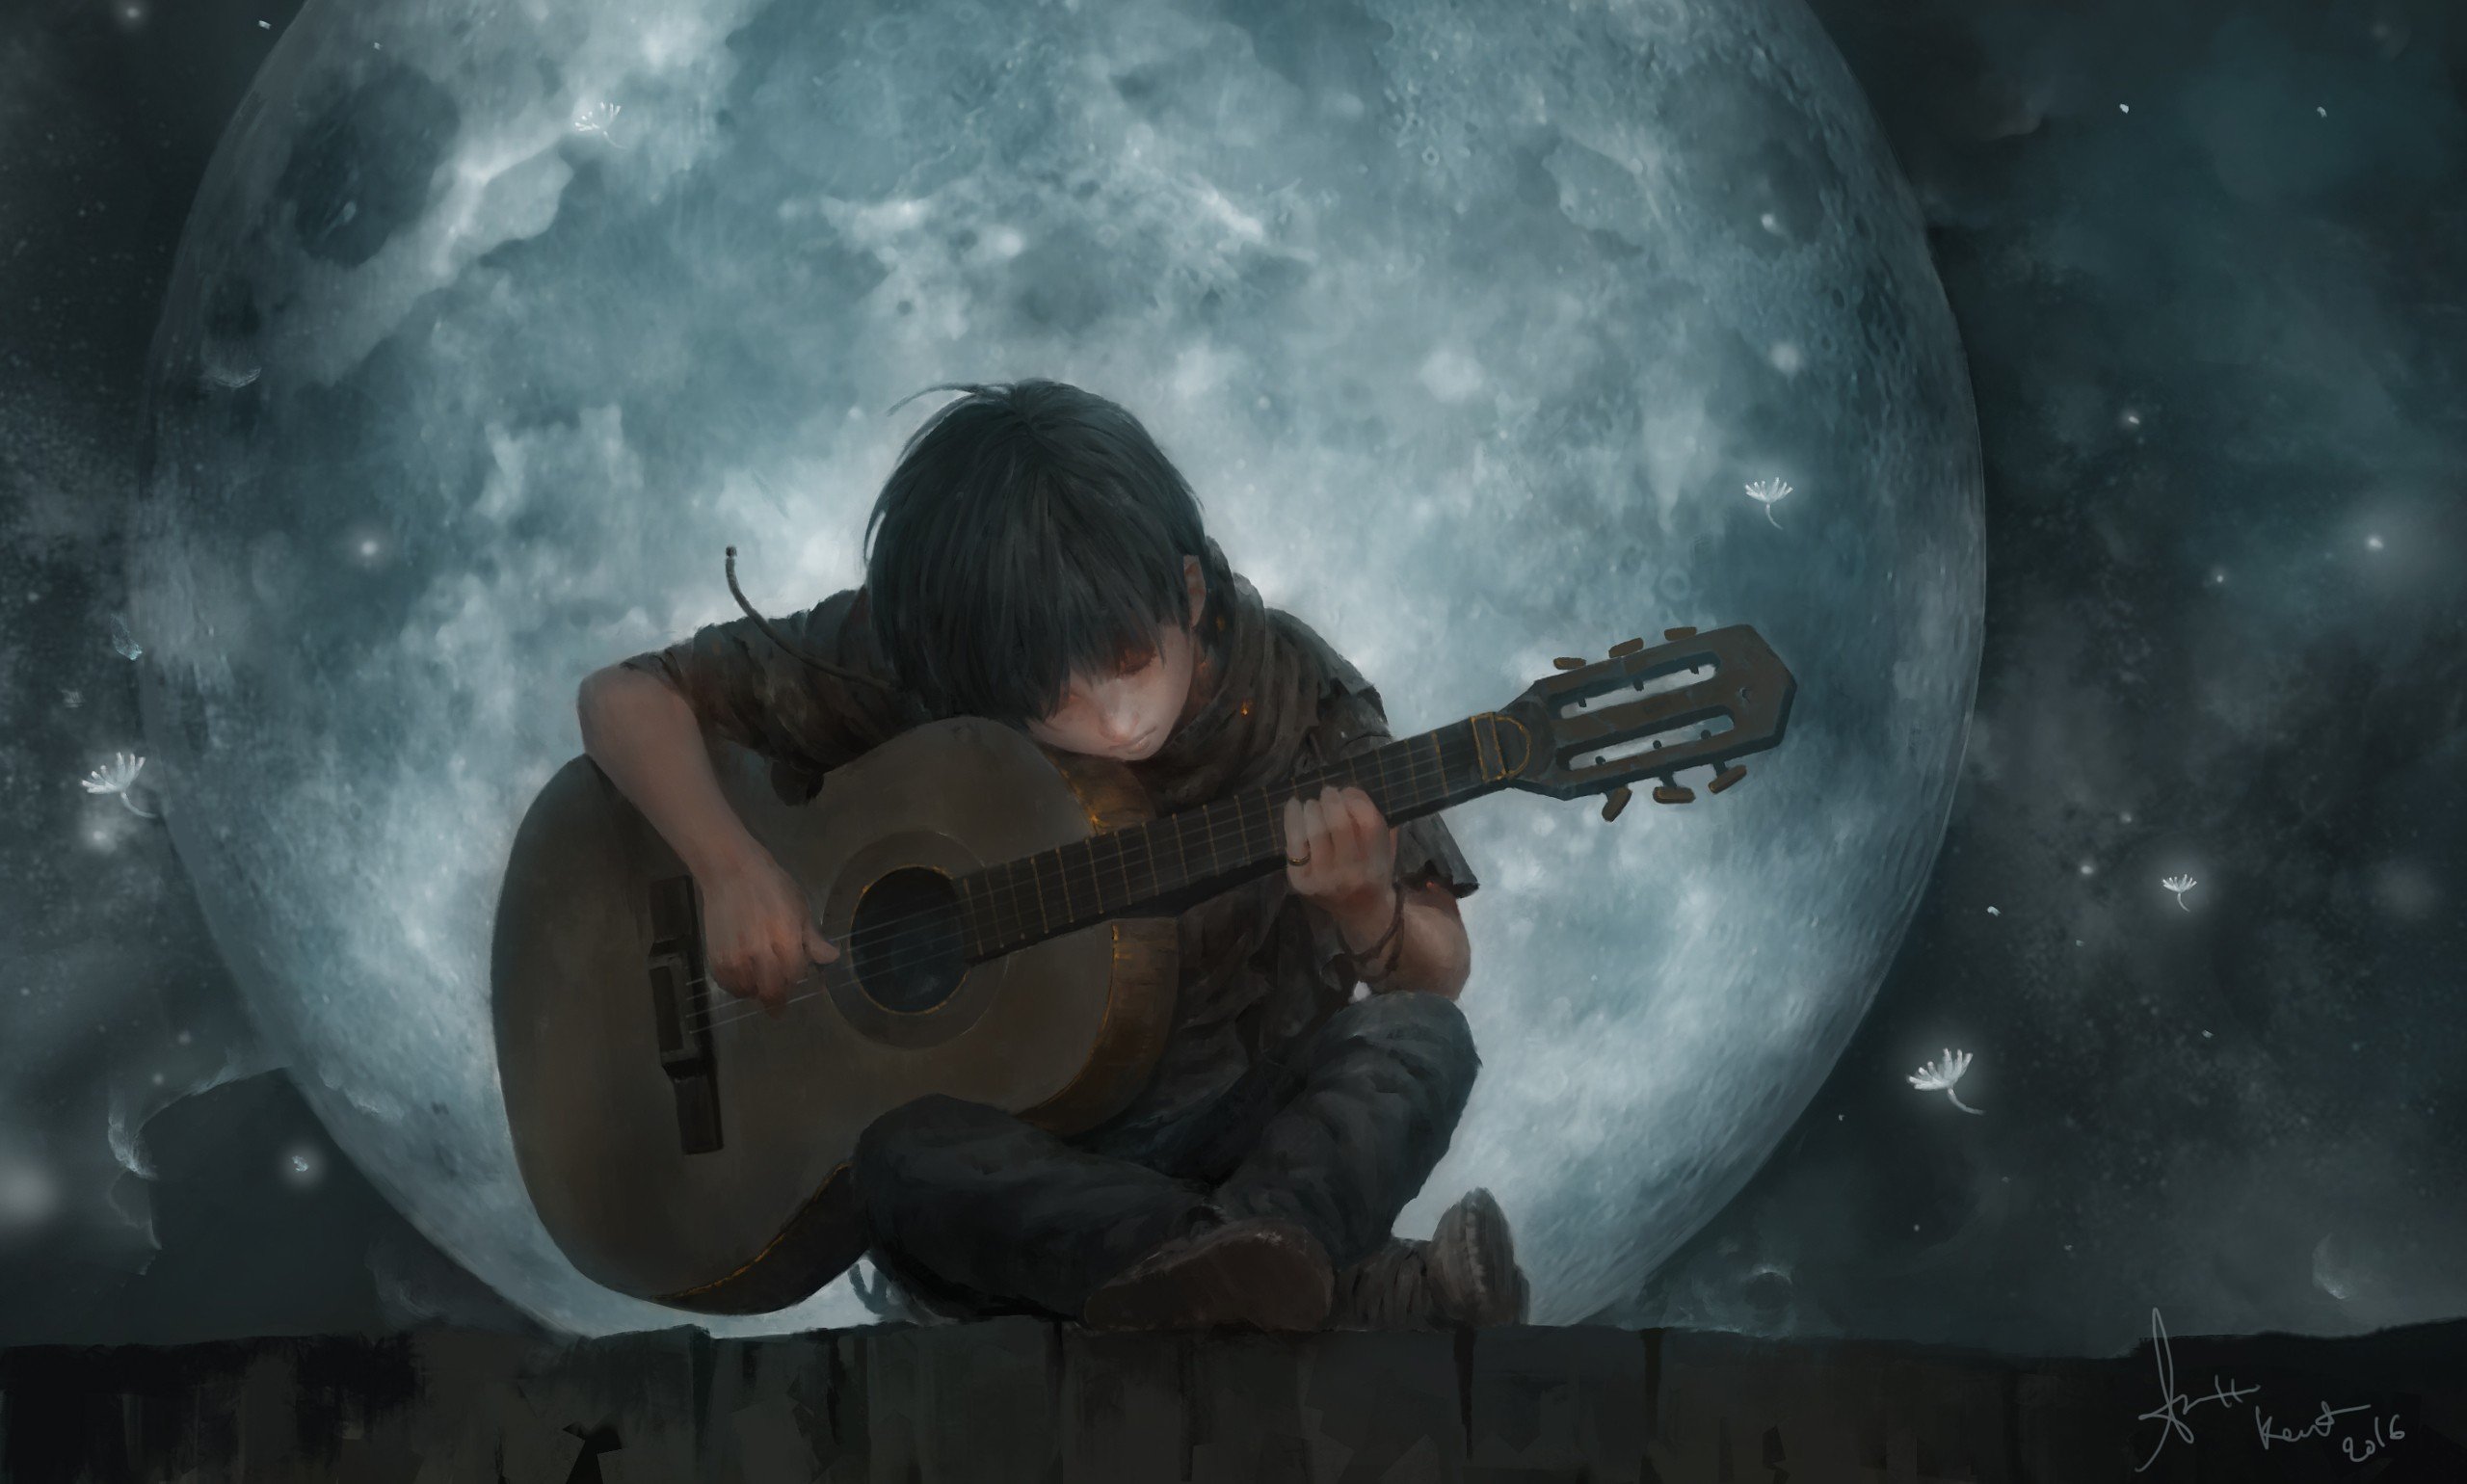 fantasy, Art, Guitar, Boy, Moon Wallpaper